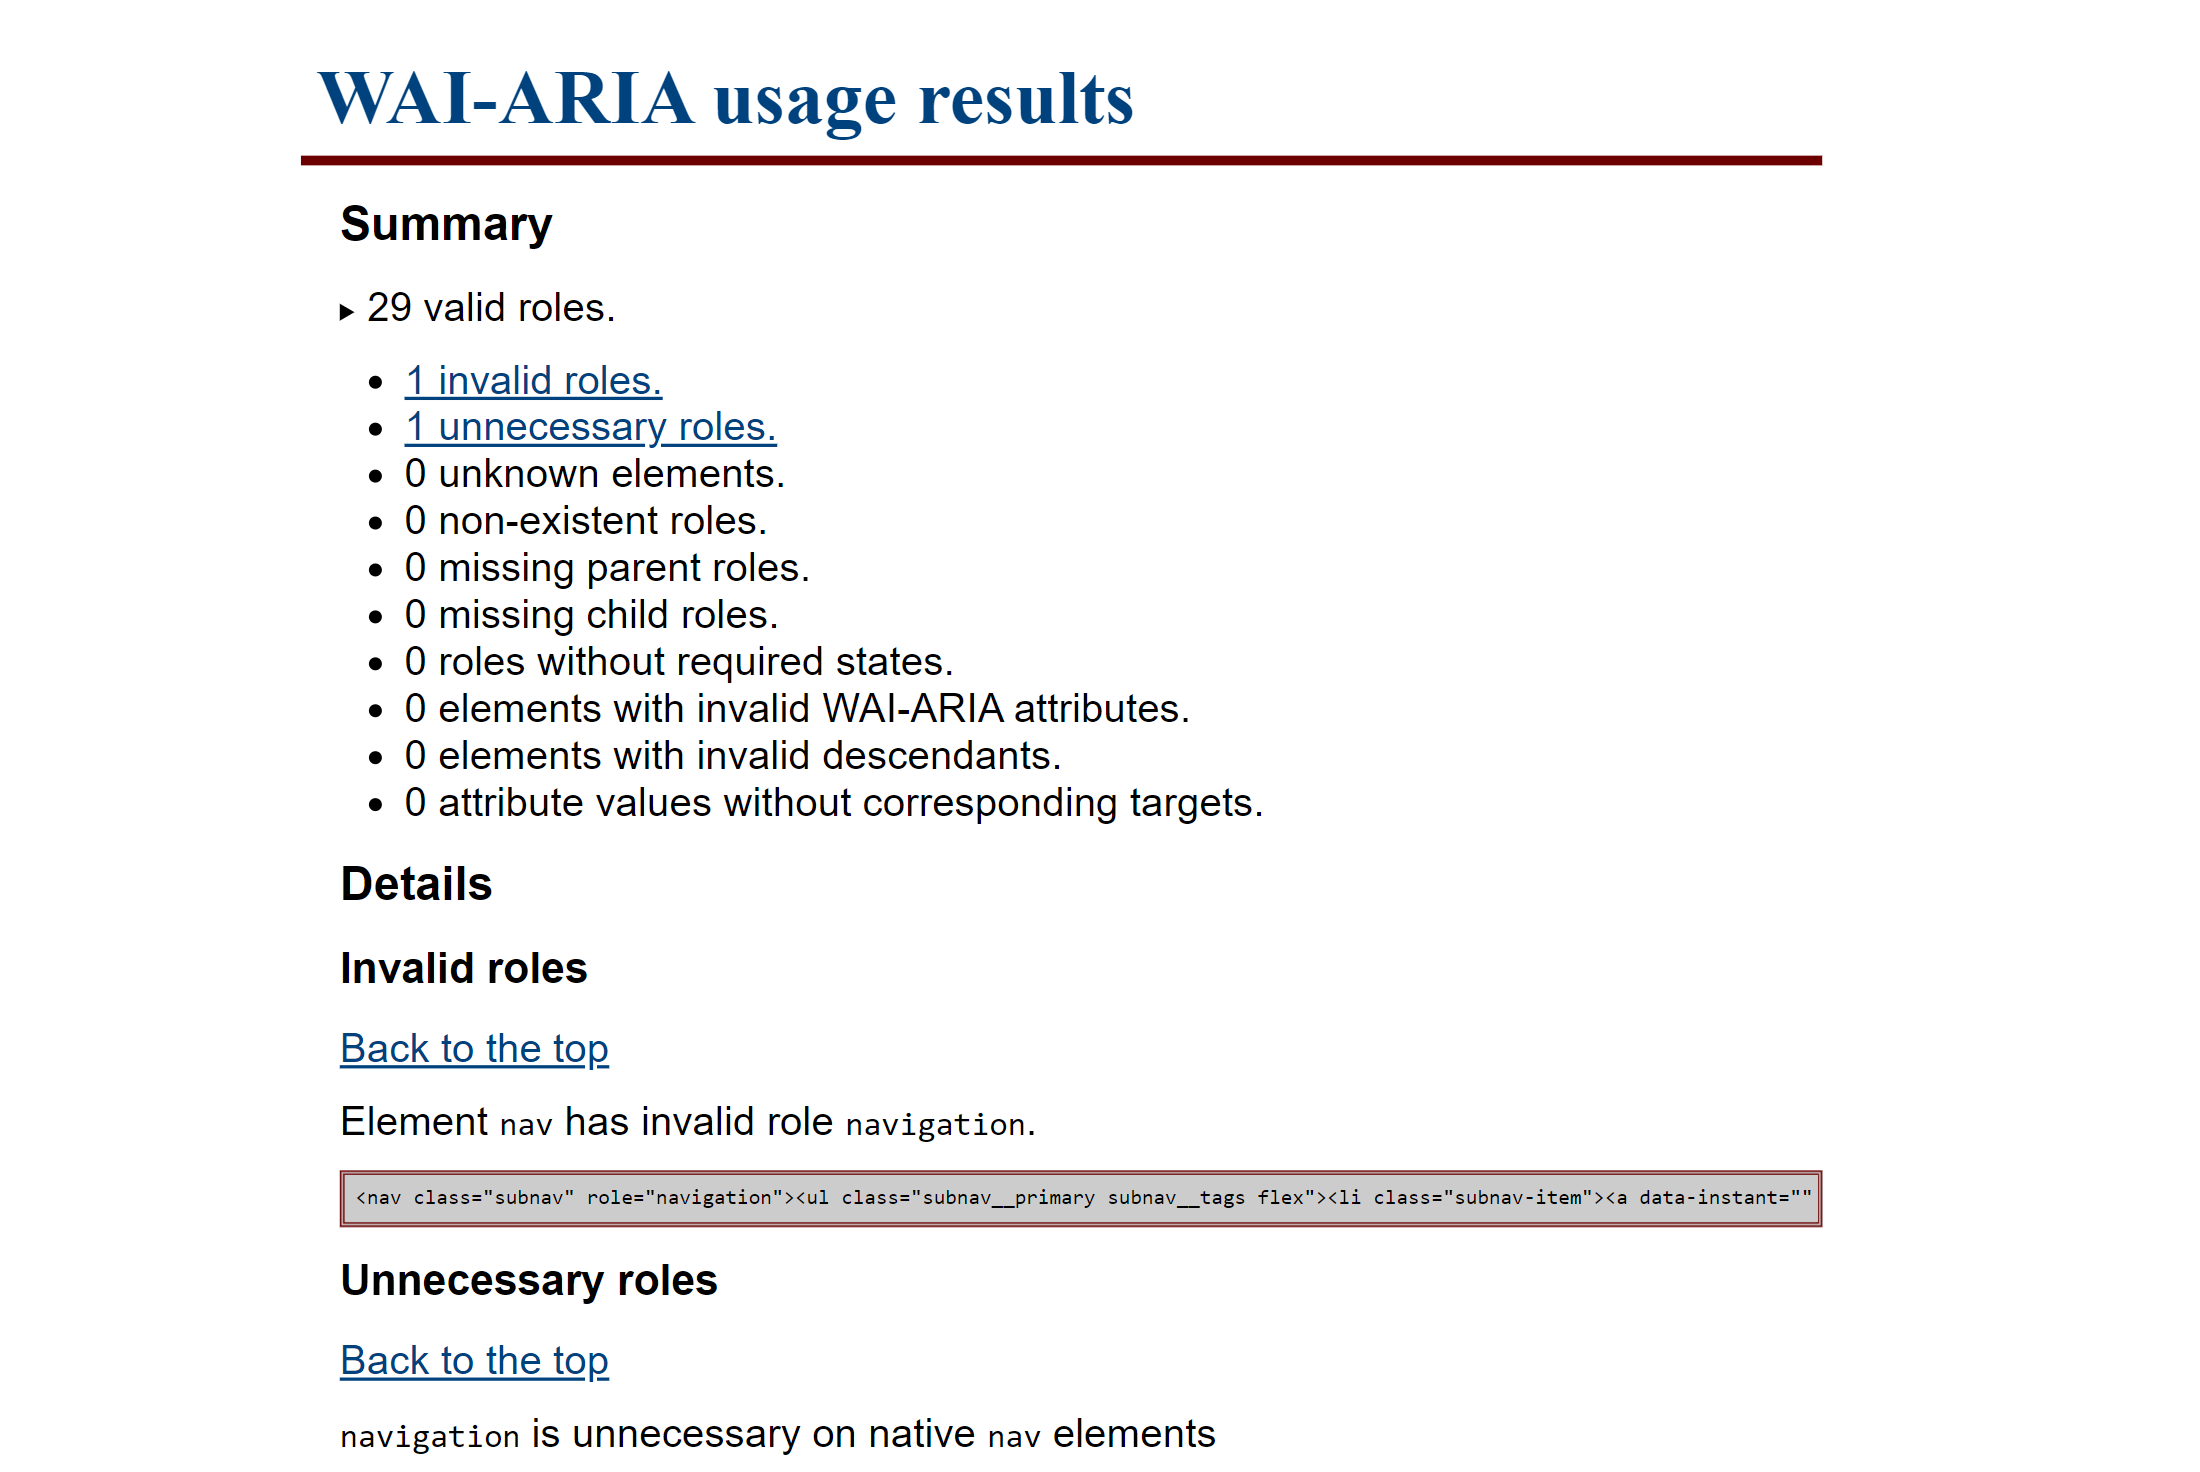 Букмарклет WAI-ARIA запускает скрипт, который проверяет совместимость ролей элементов страницы с атрибутами ARIA